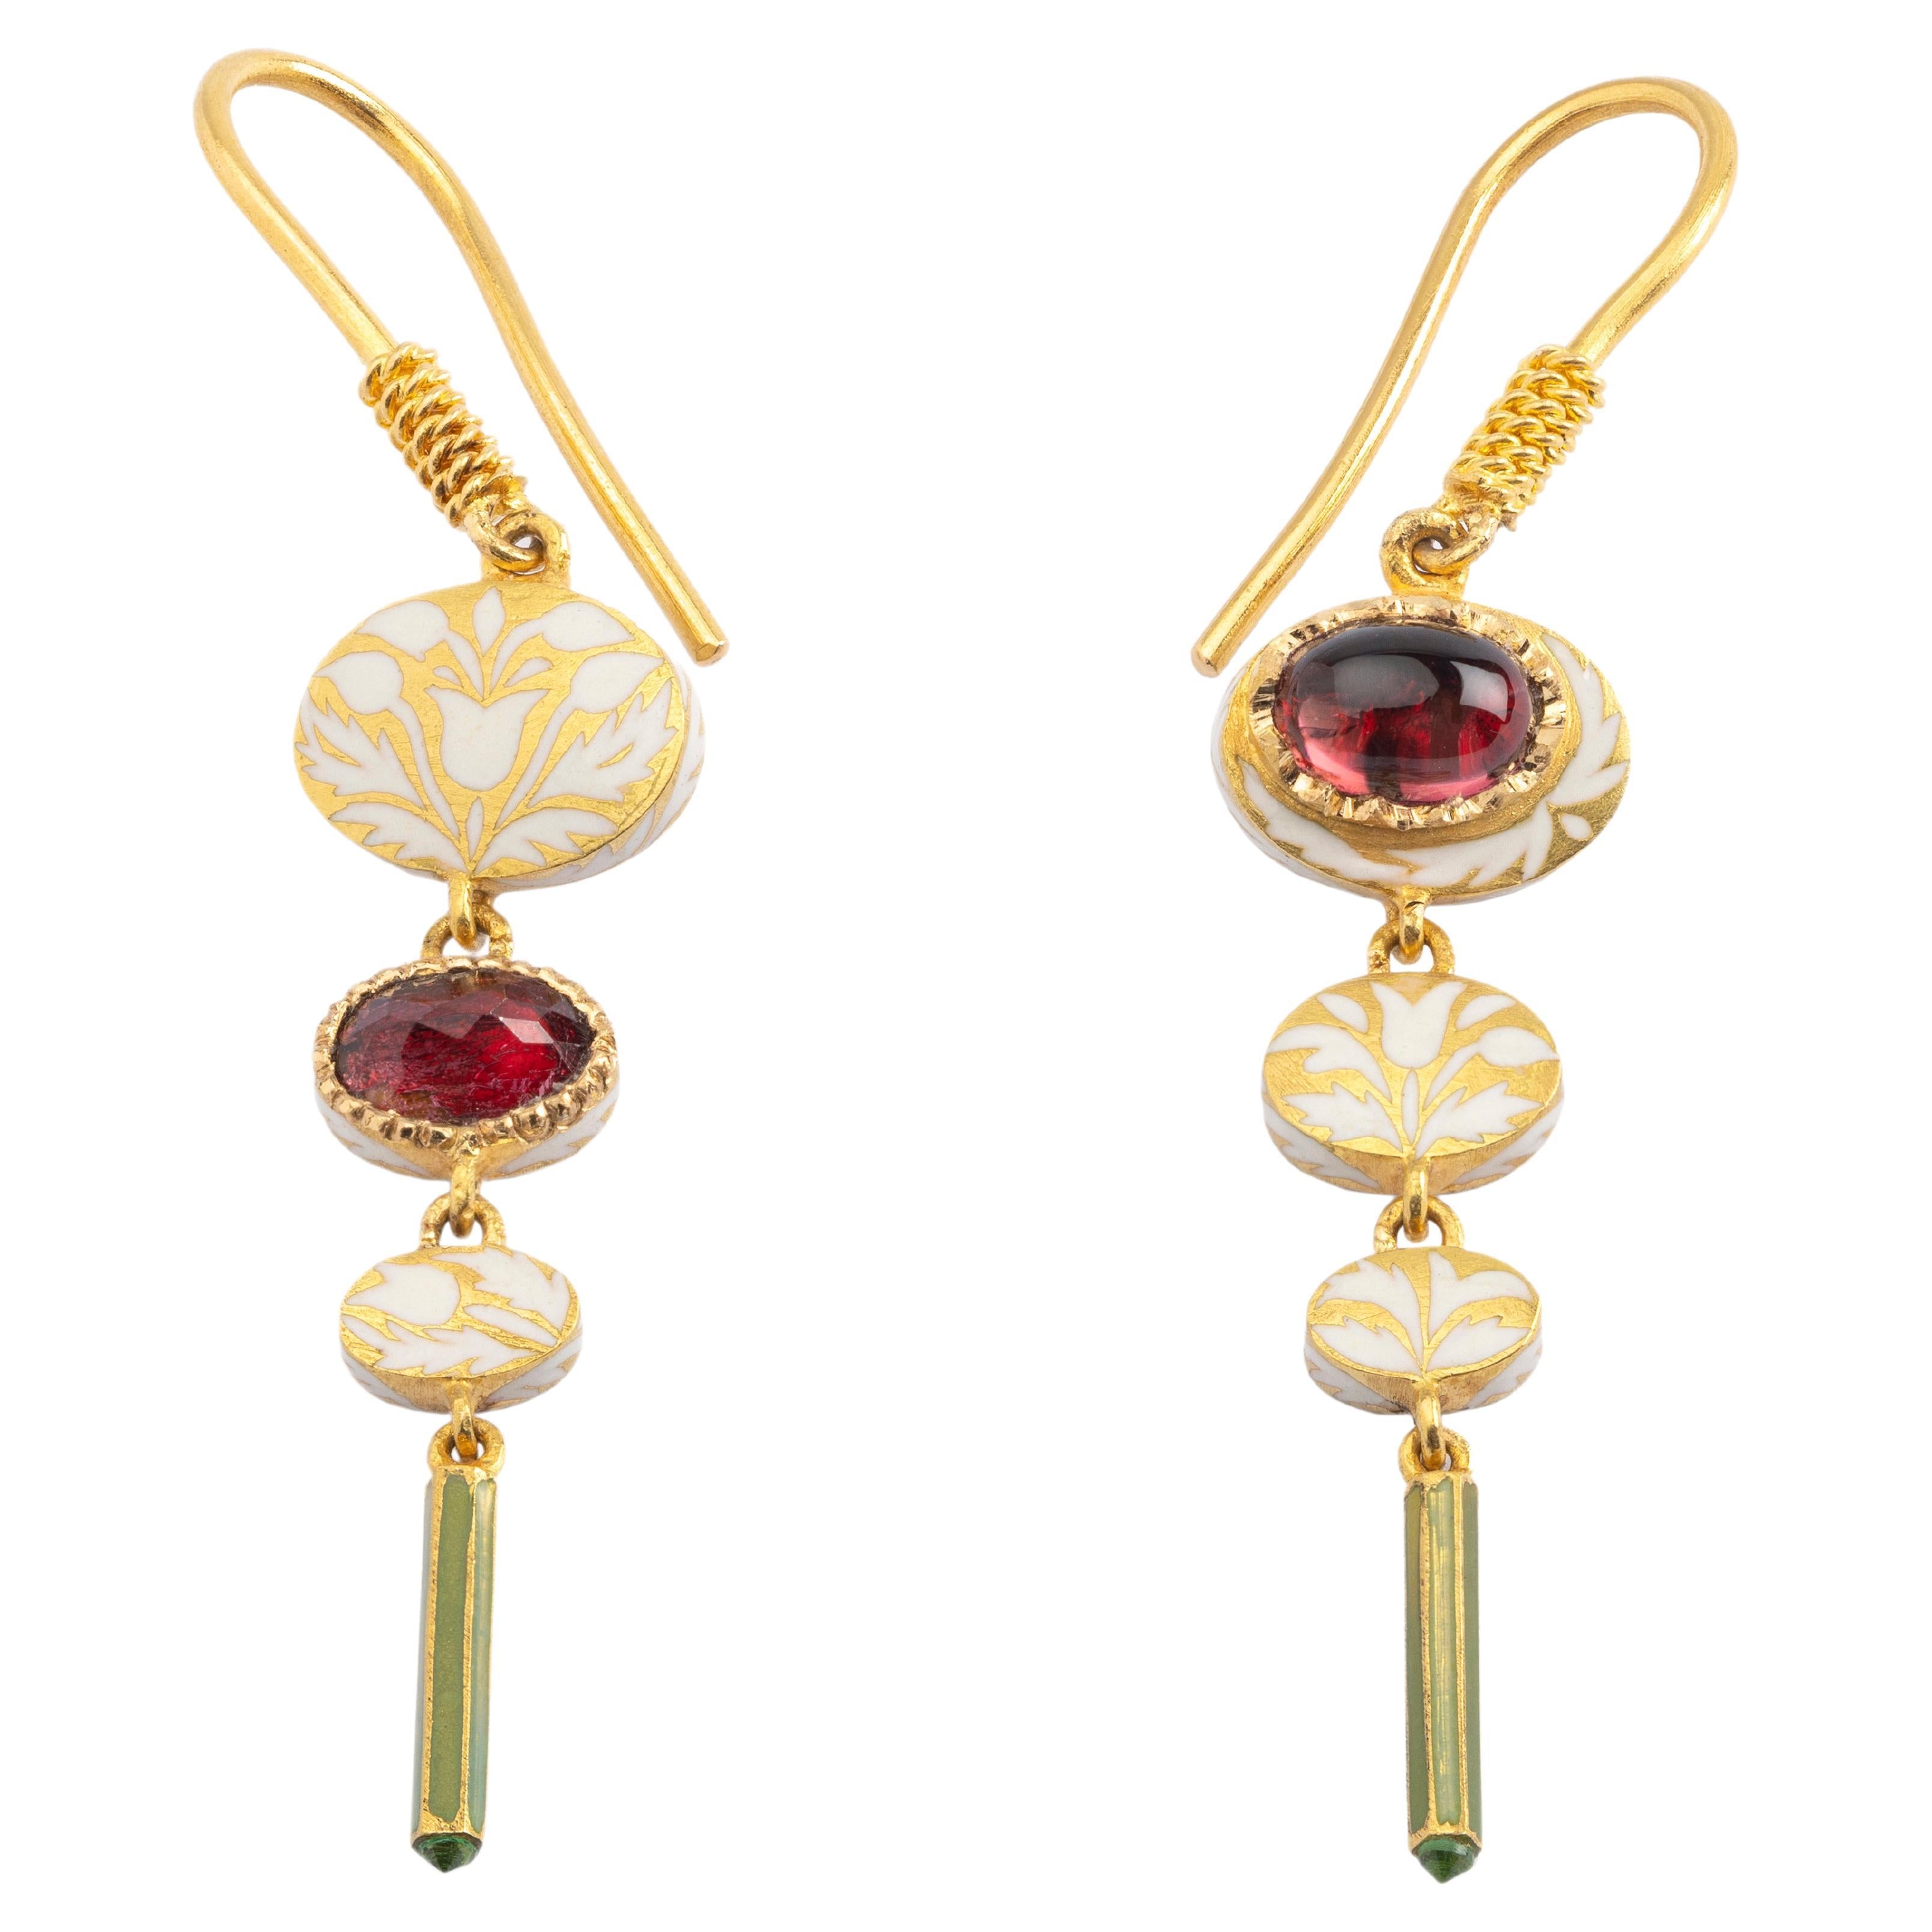 22k Gold Handmade 1.1 Carat Tourmaline Enamel Dangle Earrings by Agaro Jewels